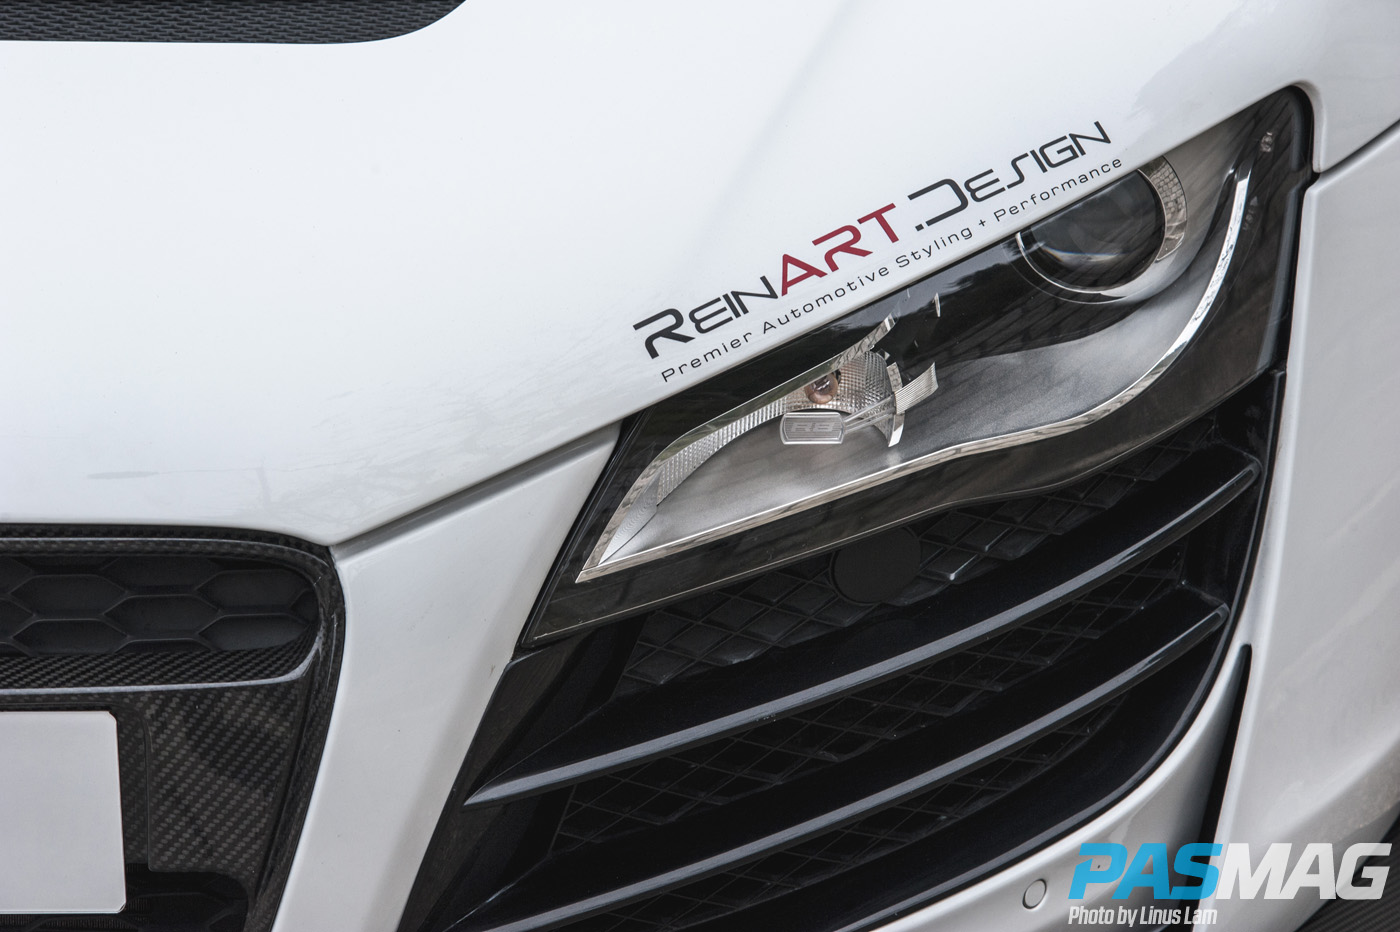 ReinART Design 2008 Audi R8 PASMAG August 2015 Cover Feature Linus Lam 2 copy